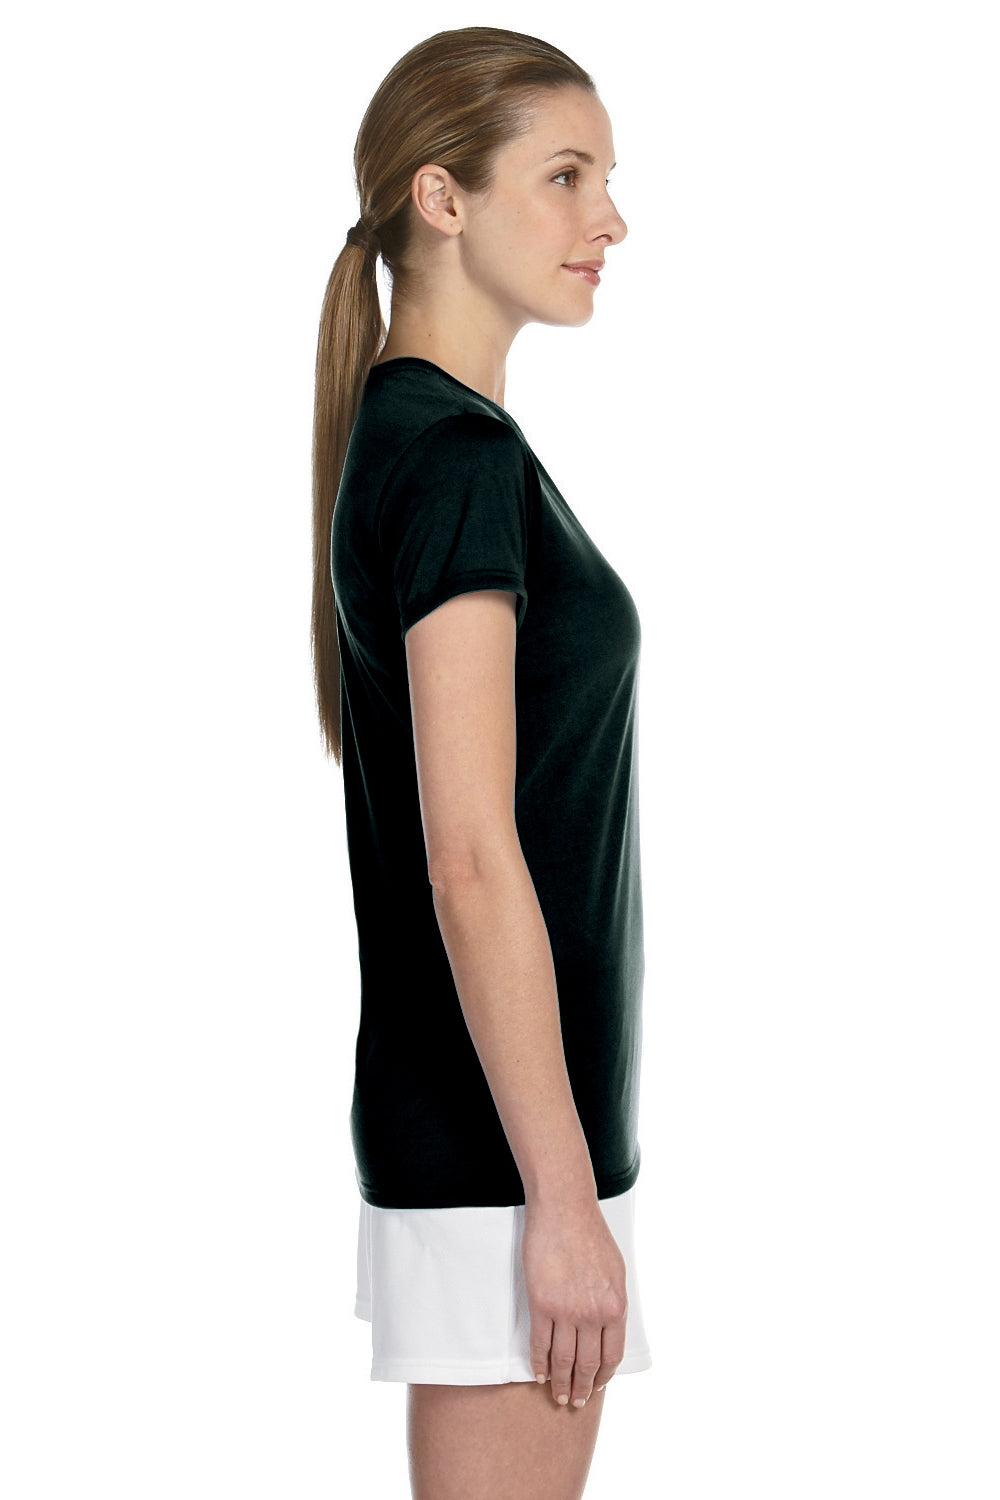 Gildan G420L Womens Performance Jersey Moisture Wicking Short Sleeve Crewneck T-Shirt Black Side